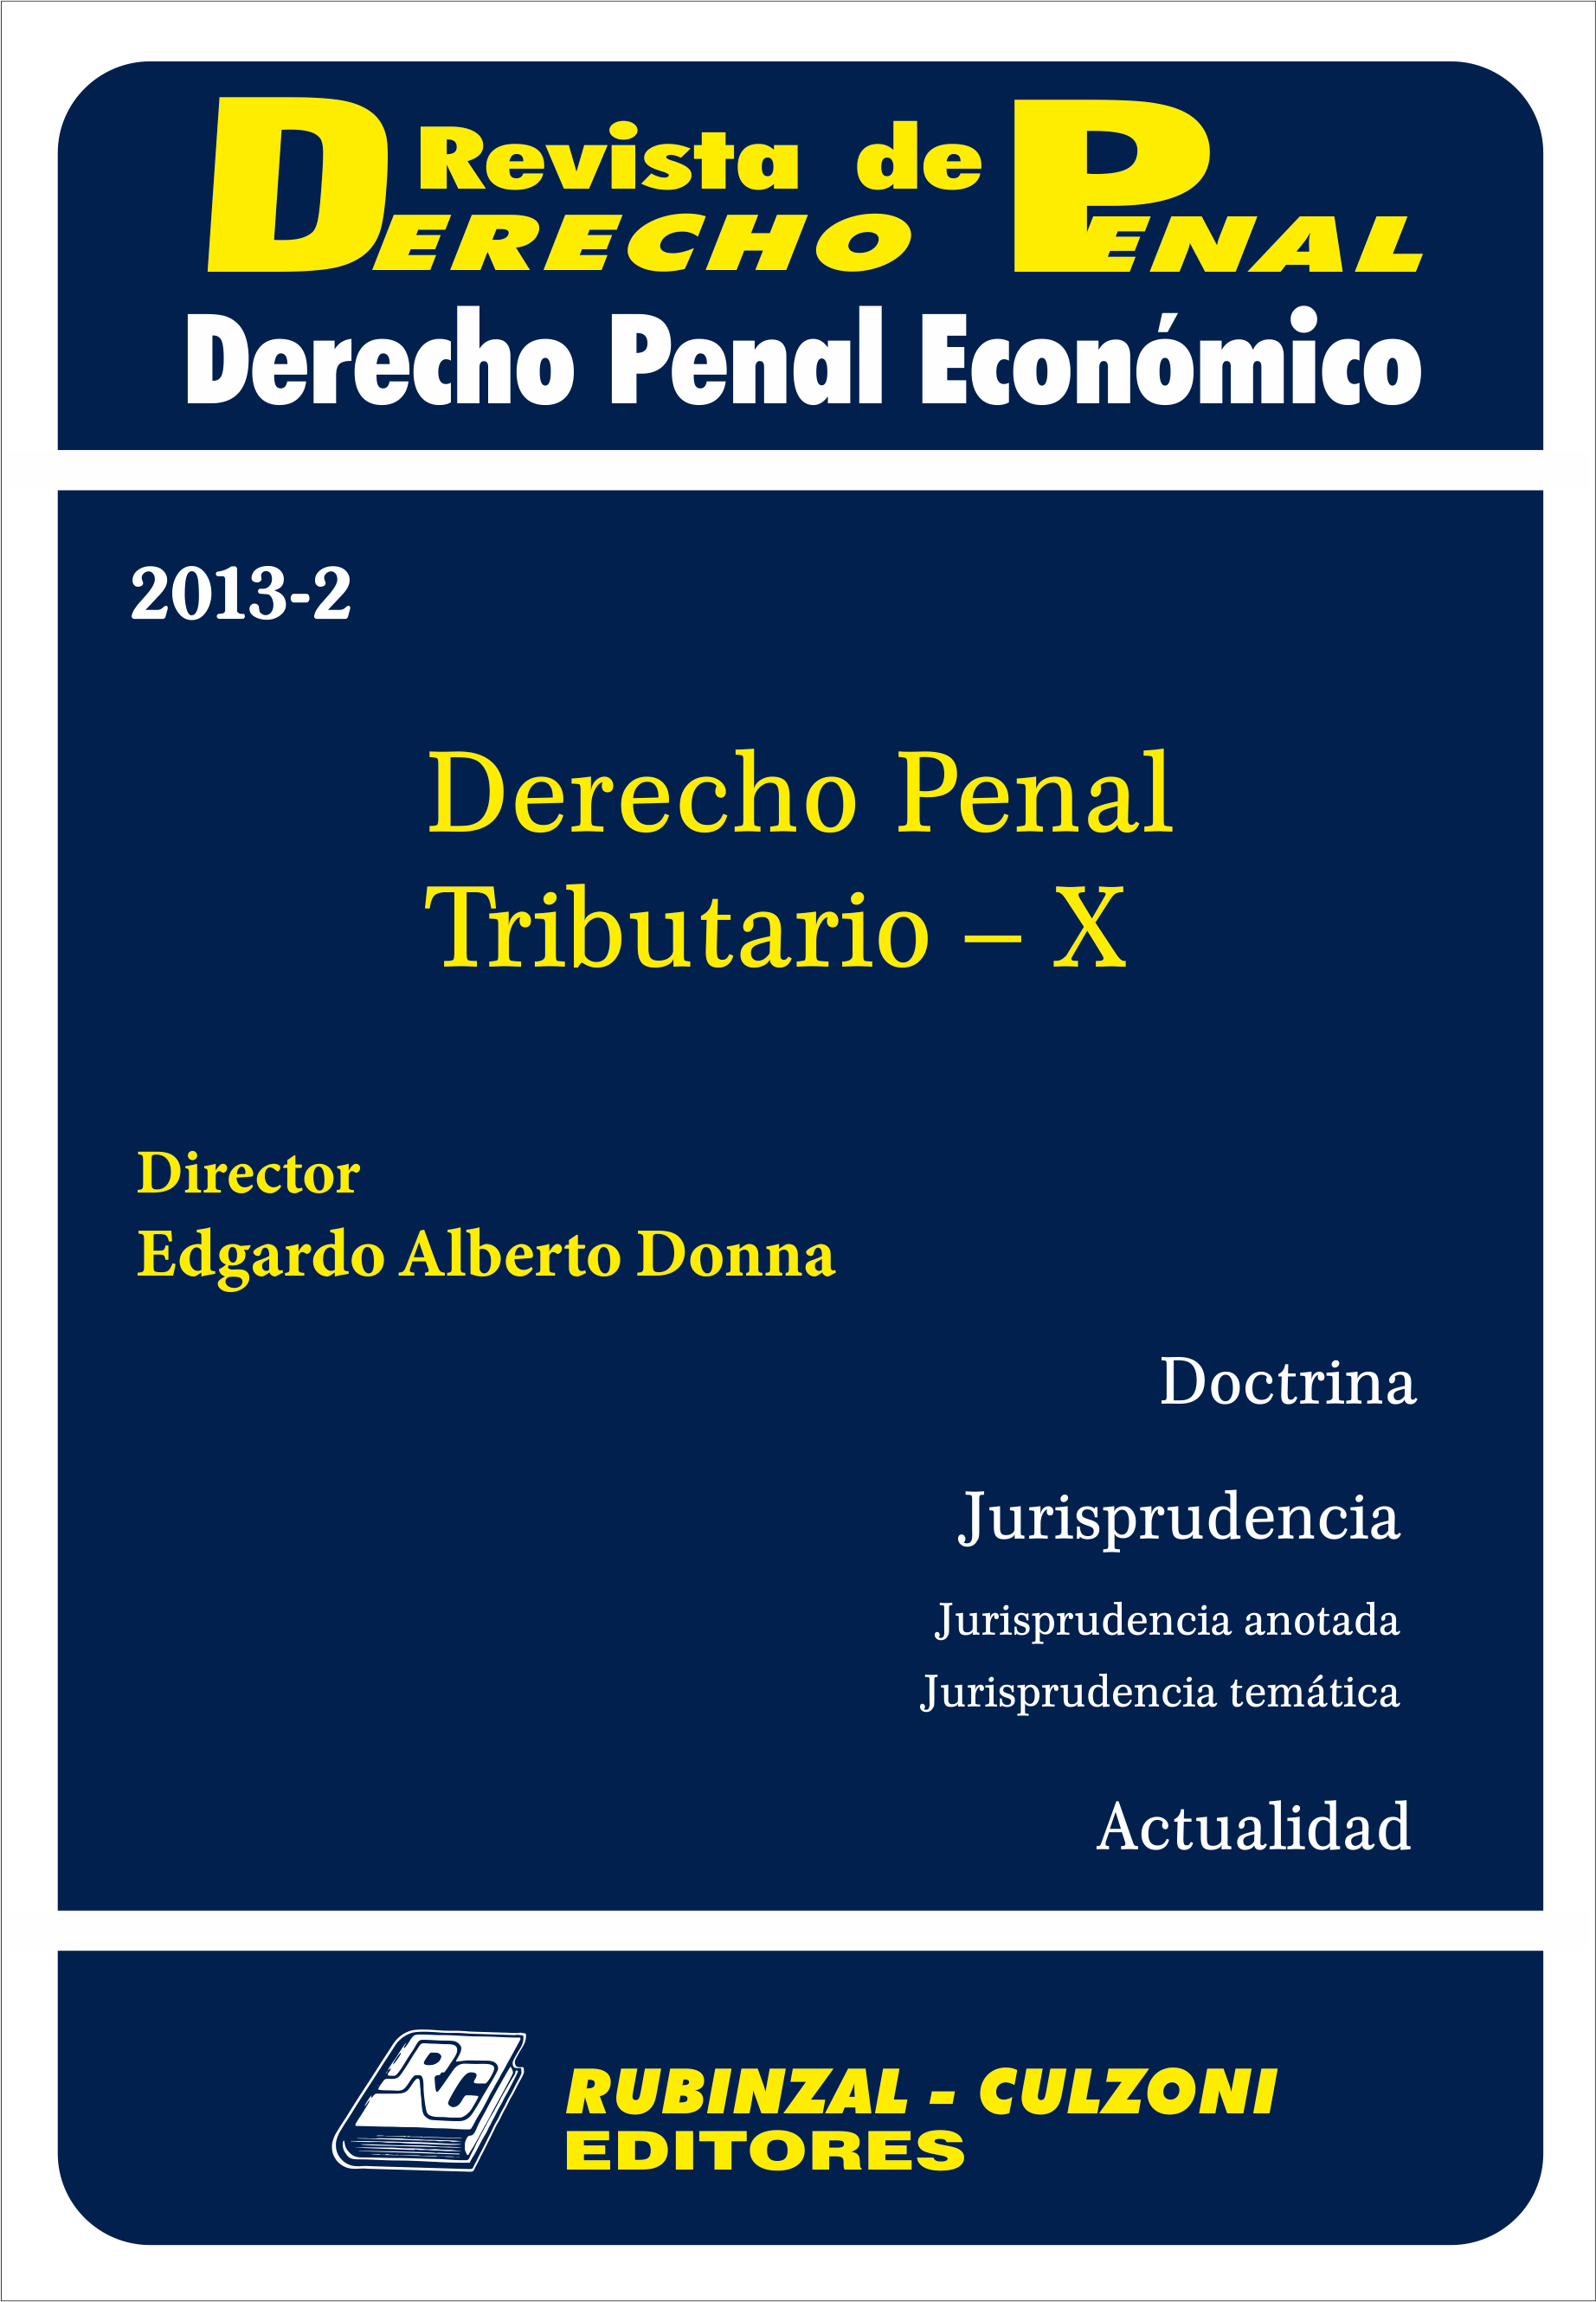 Revista de Derecho Penal Económico - Derecho Penal Tributario - X